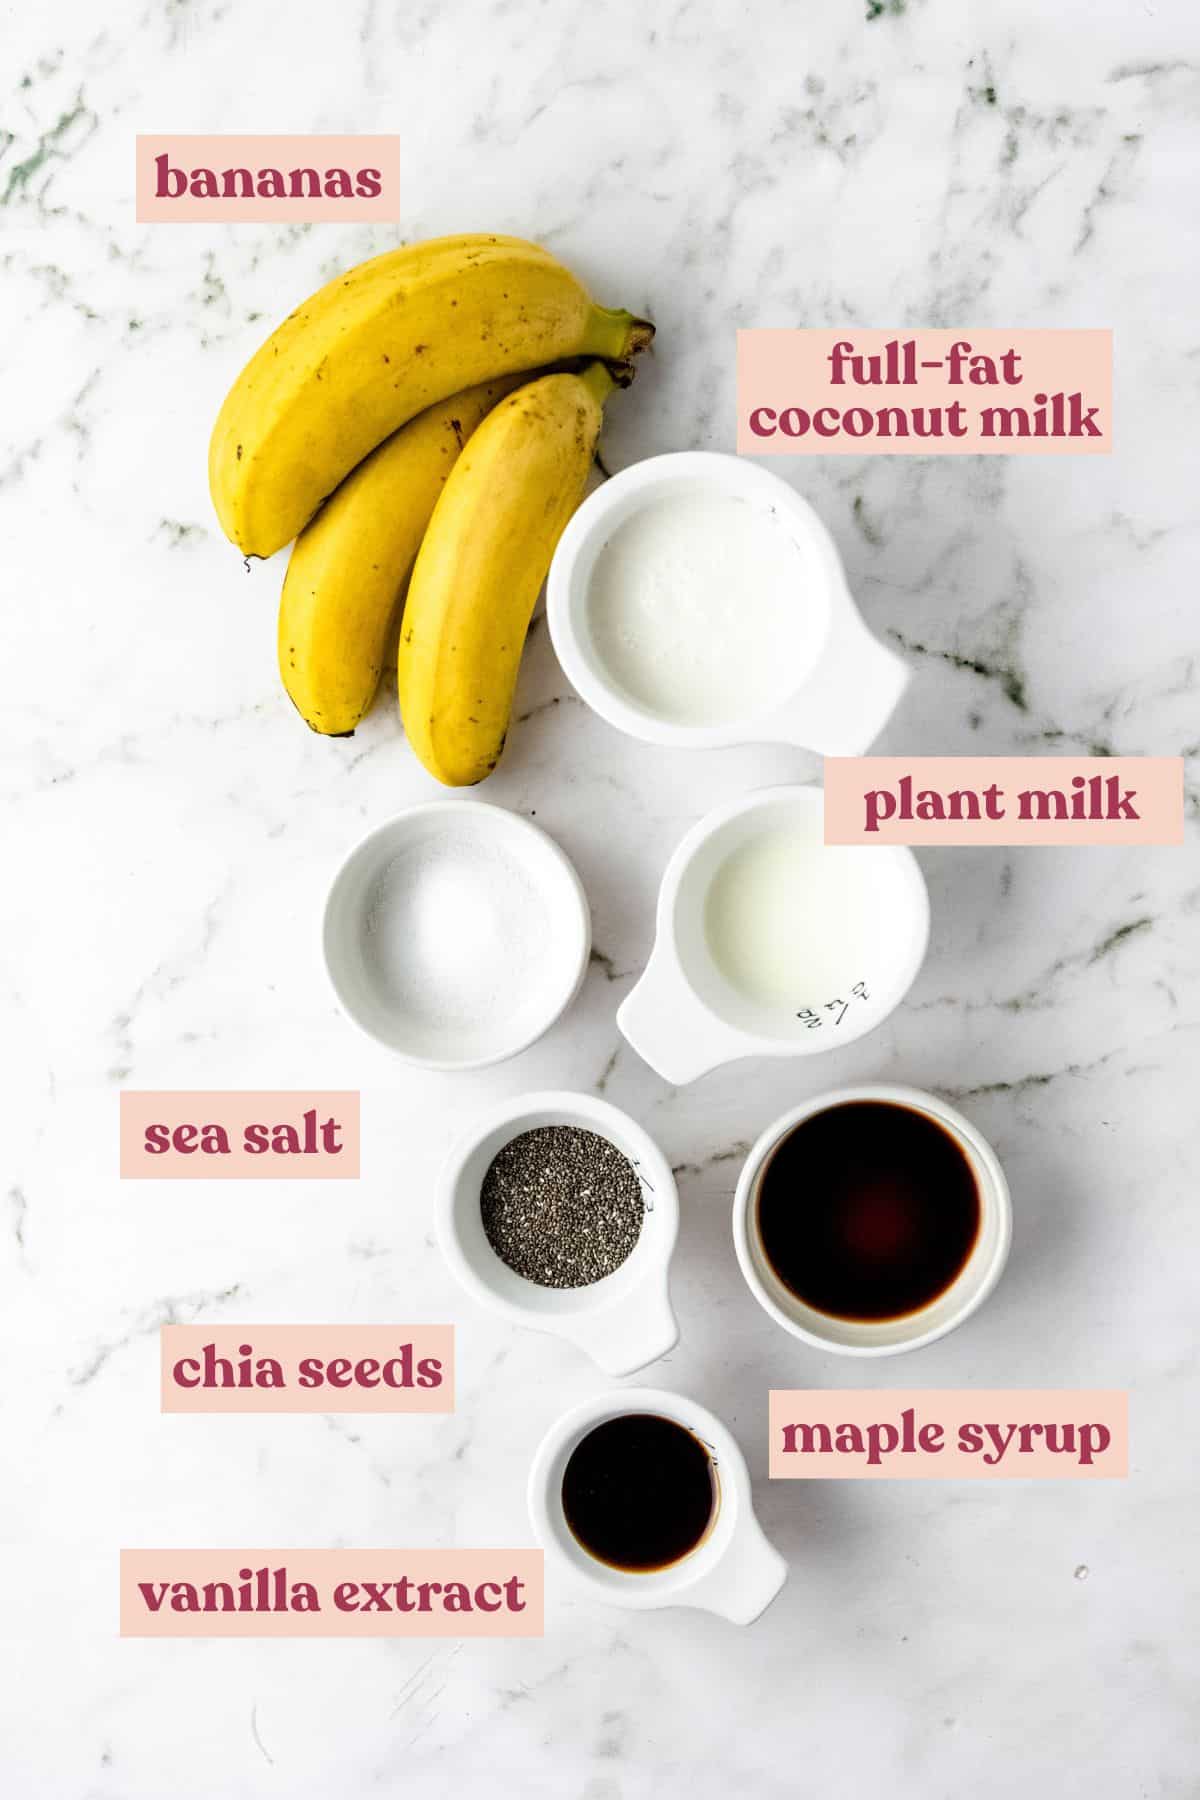 Banana pudding ingredients.